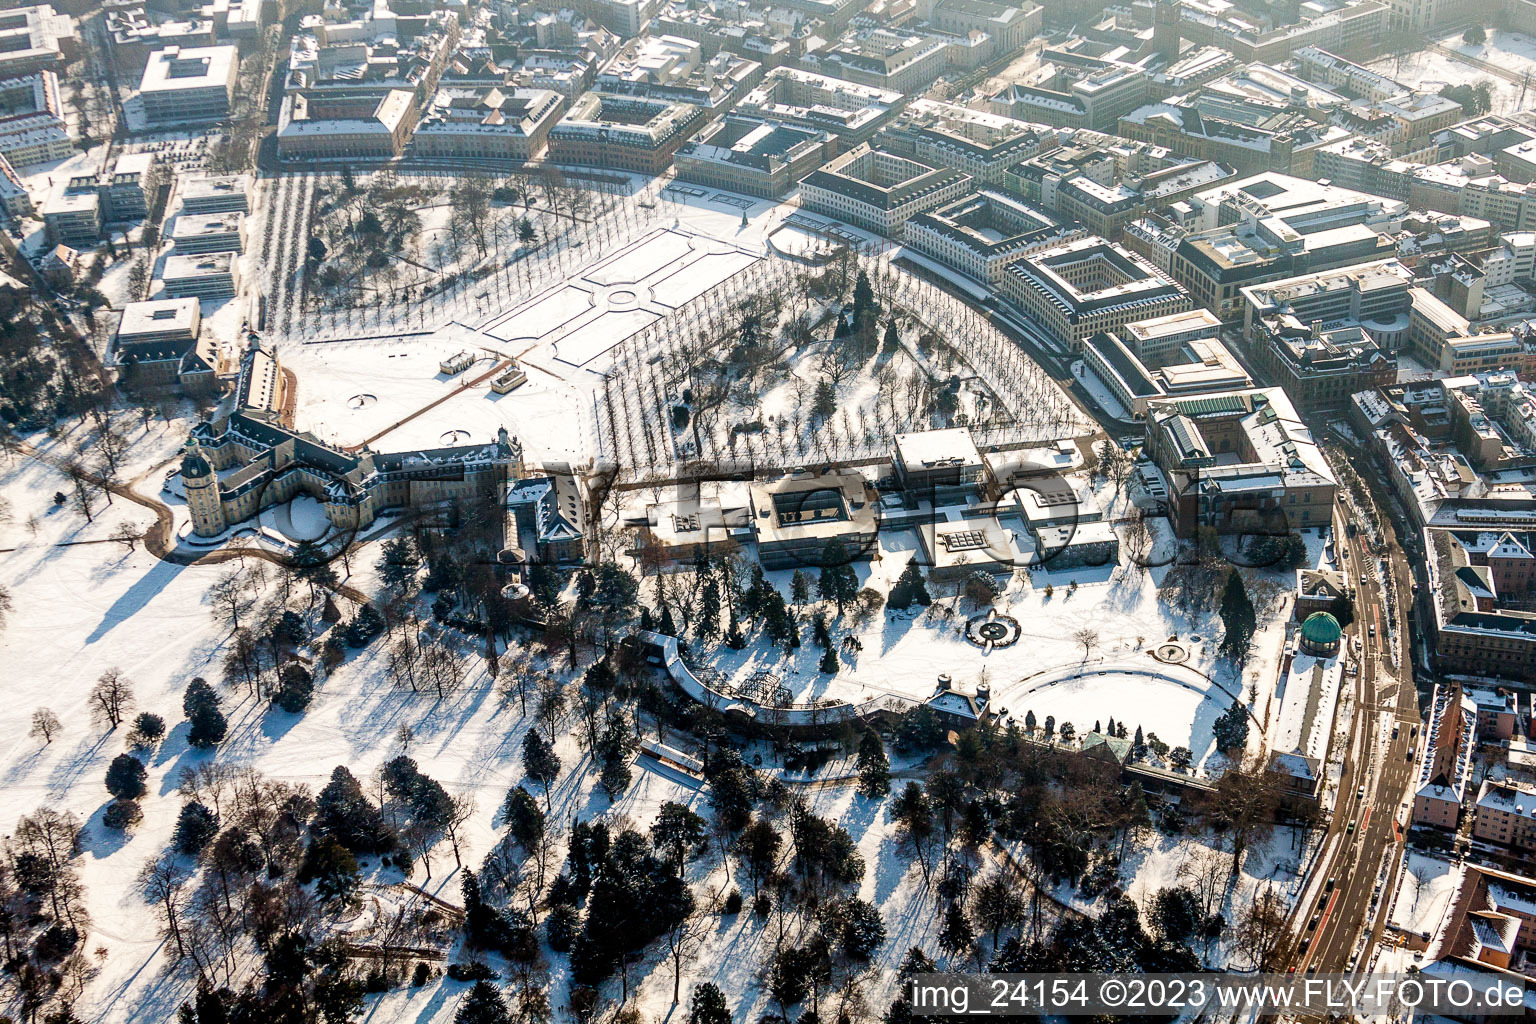 Luftbild von Winterlich schneebedeckte Gebäudekomplex im Schloßpark von Schloss Karlsruhe in Karlsruhe im Ortsteil Innenstadt-West im Bundesland Baden-Württemberg, Deutschland